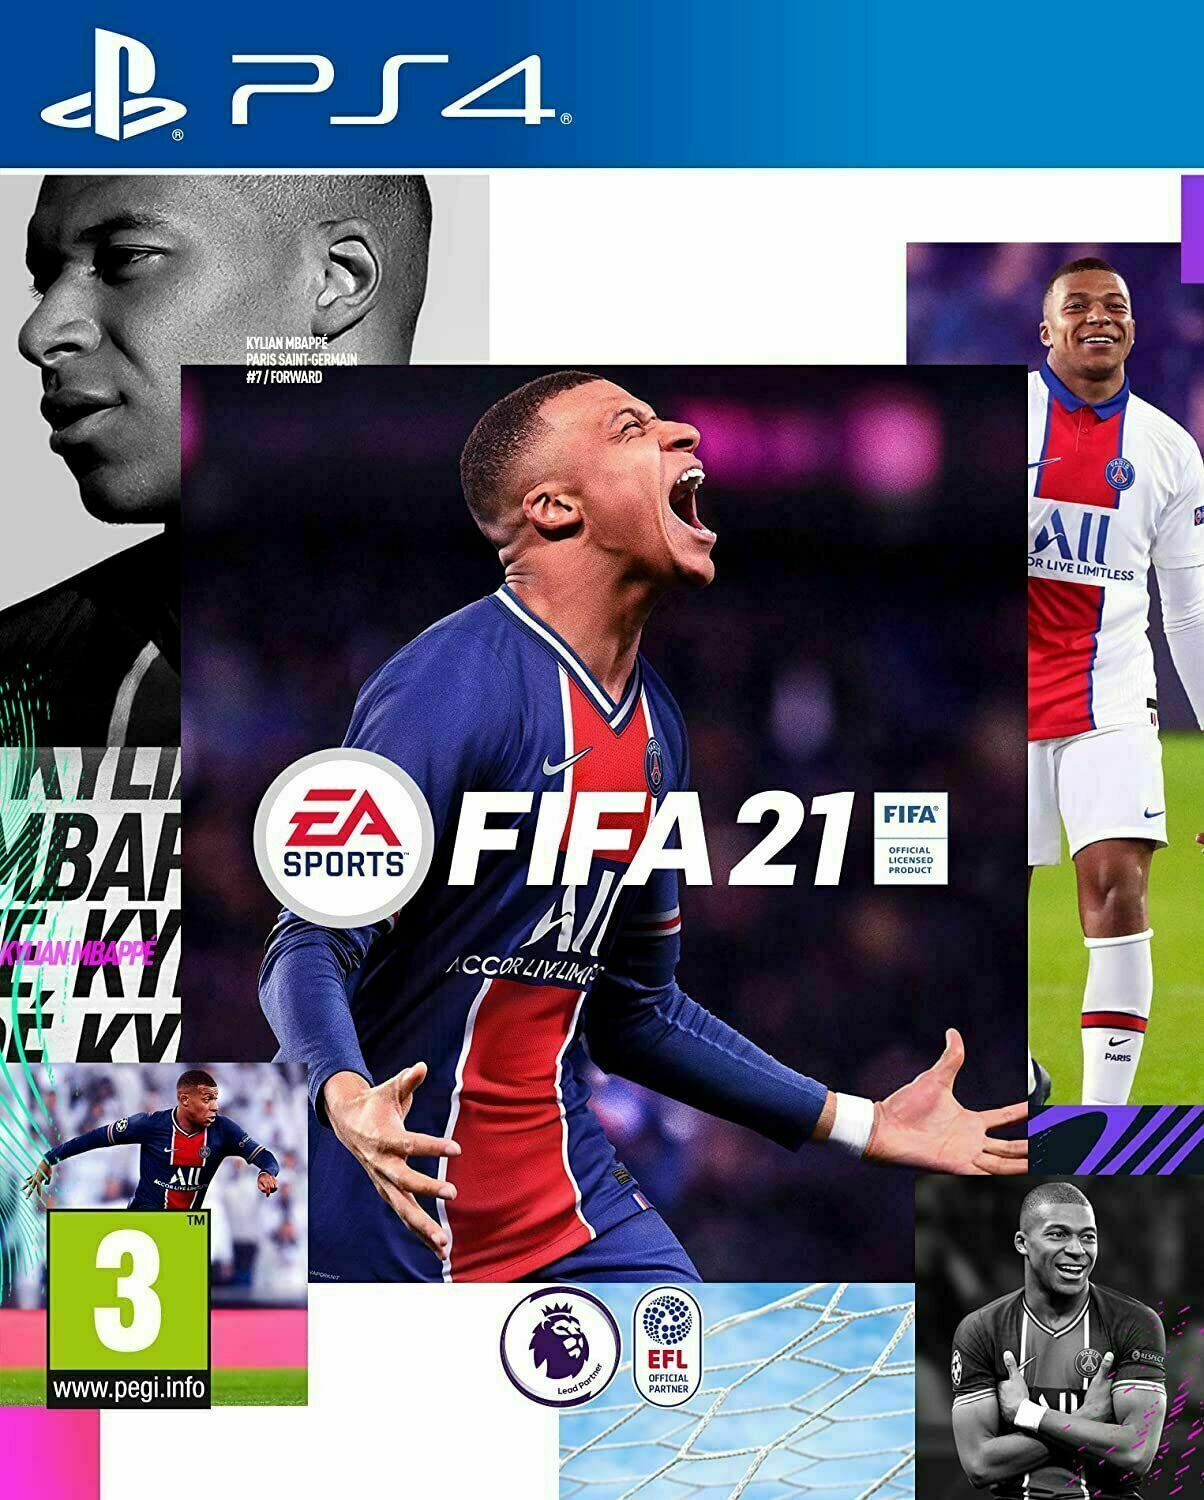 PlayStation 4 : FIFA 21 (PS4) VideoGames - saynama